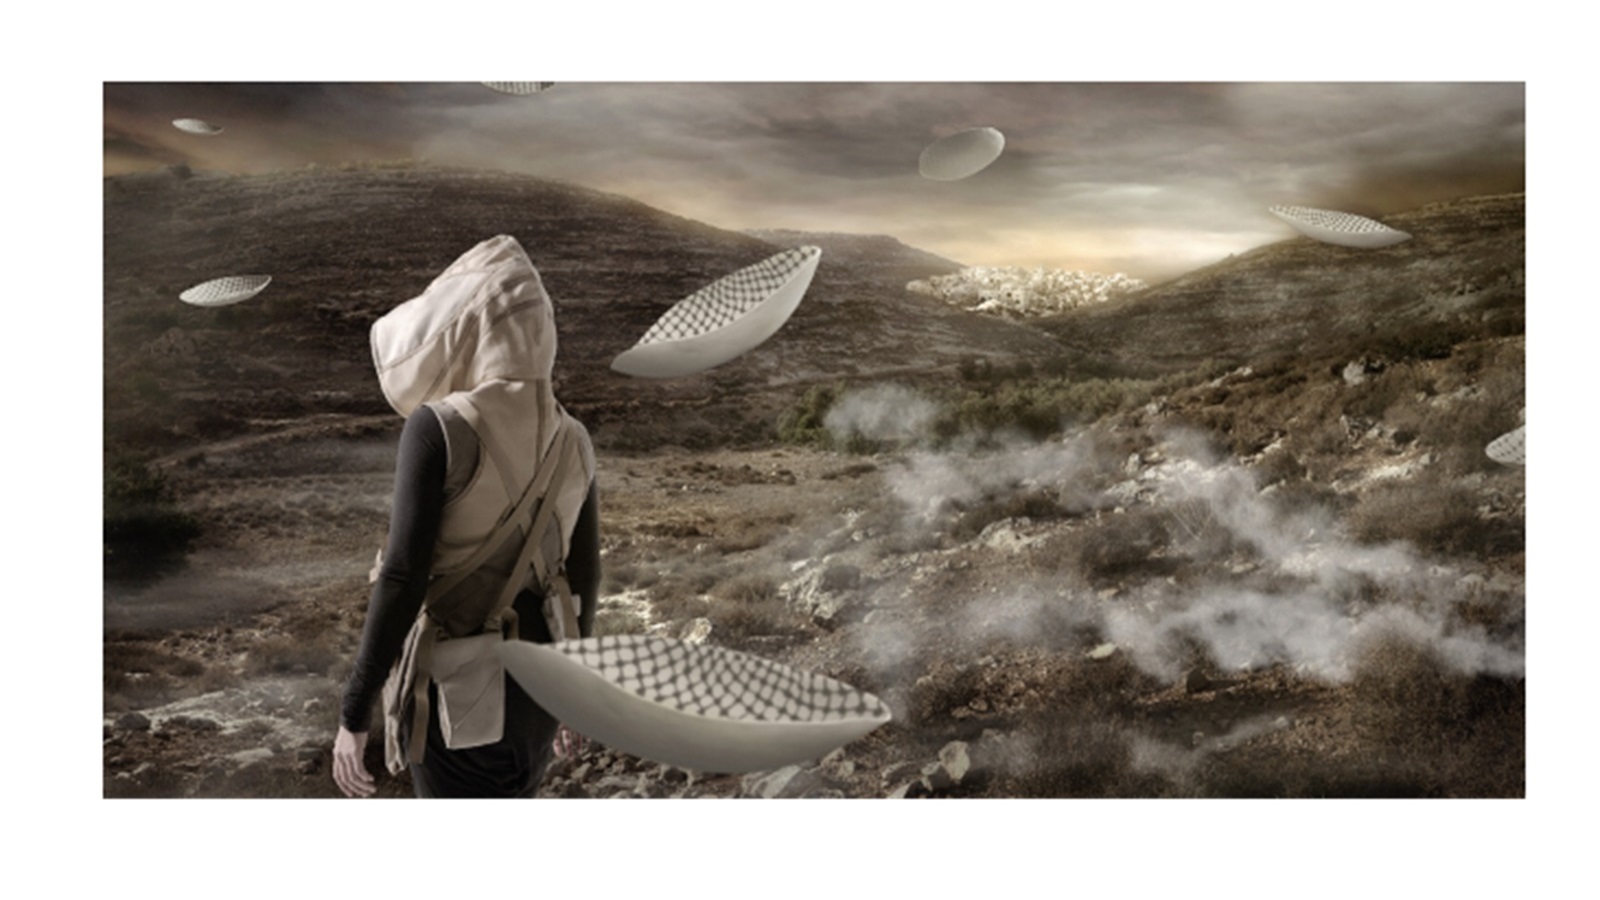 ARABOFUTURS: خيال علمي وتصورات جديدة للعالم العربي